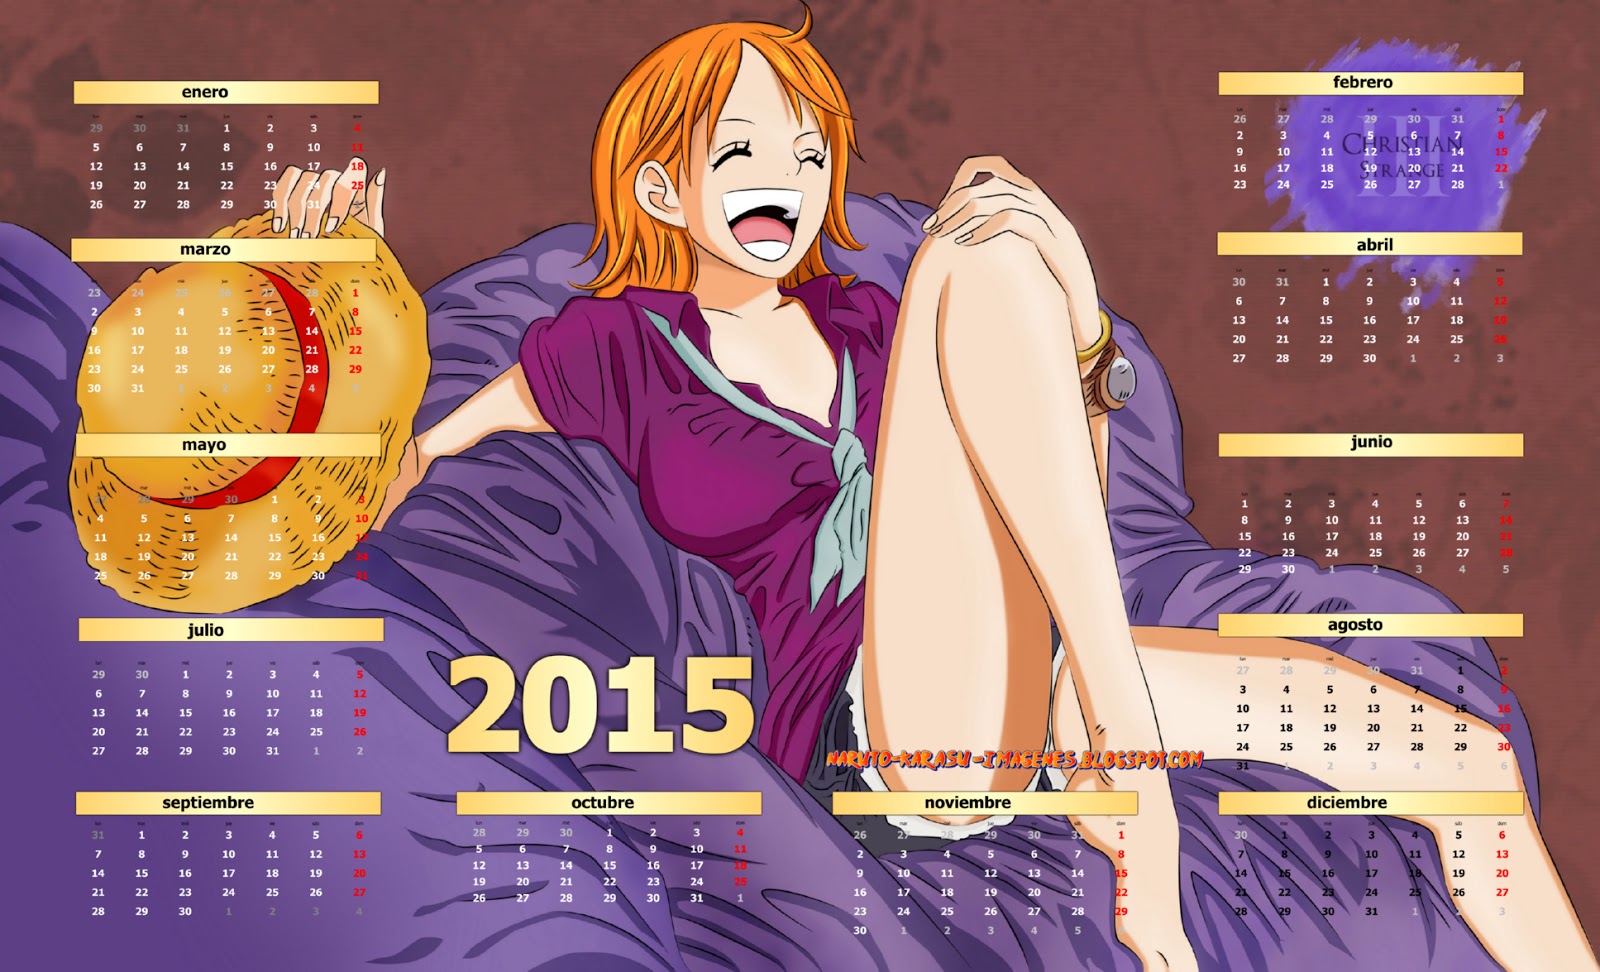 calendario one piece 2015